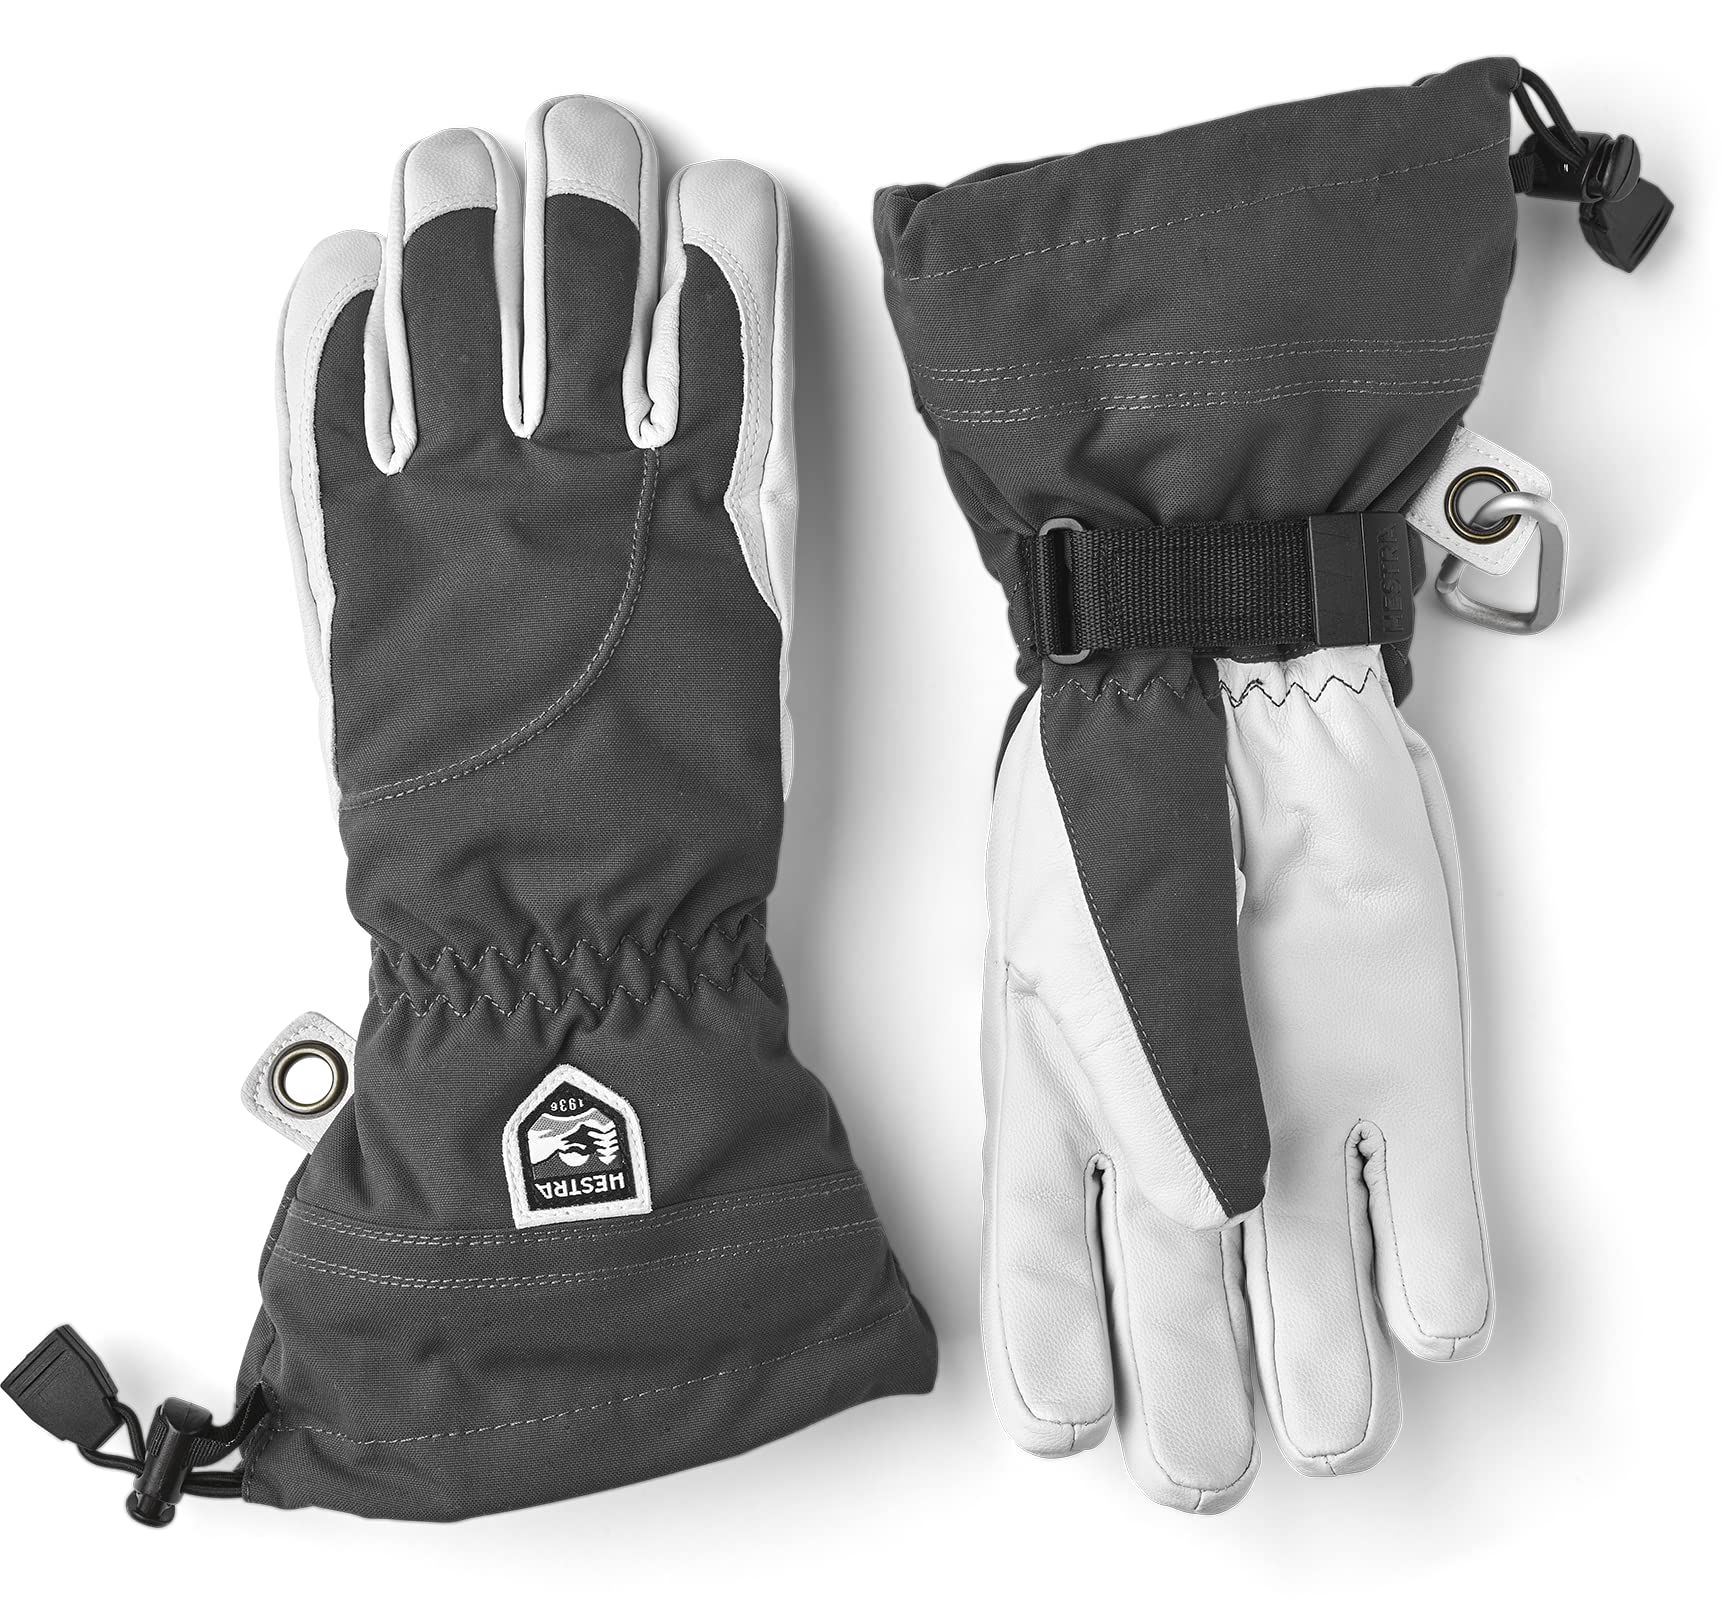 Hestra Heli Ski Damen Handschuh - Klassischer 5-Finger Leder Schneehandschuh zum Skifahren, Snowboarden und Bergsteigen (Damenpassform) - Grau/Offwhite - 6